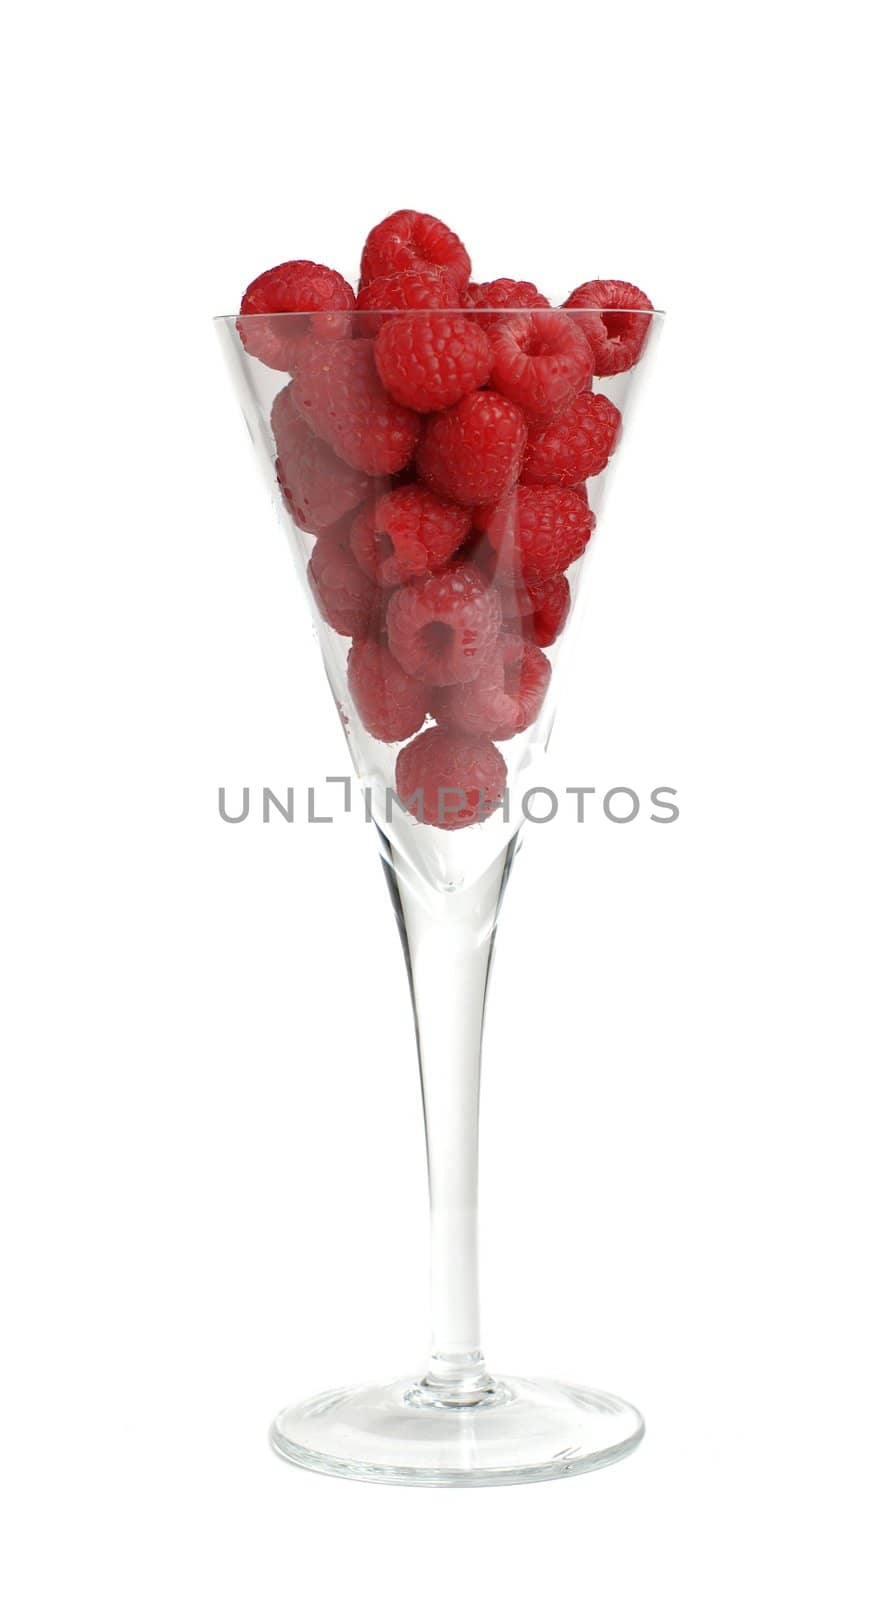 Raspberries in long stem glass against white background.